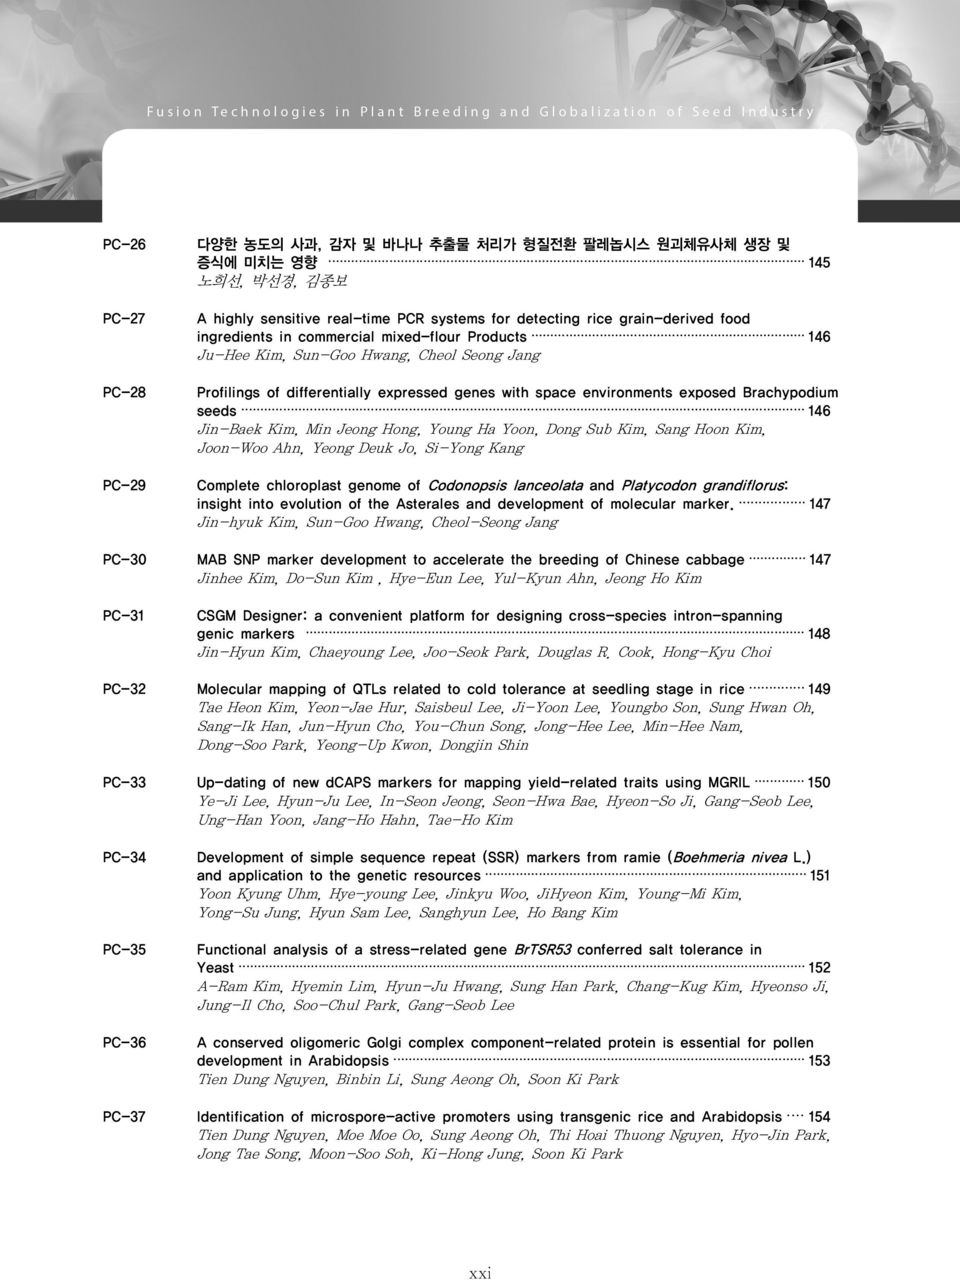 Jeong Hong, Young Ha Yoon, Dong Sub Kim, Sang Hoon Kim, Joon-Woo Ahn, Yeong Deuk Jo, Si-Yong Kang Complete chloroplast genome of Codonopsis lanceolata and Platycodon grandiflorus: insight into